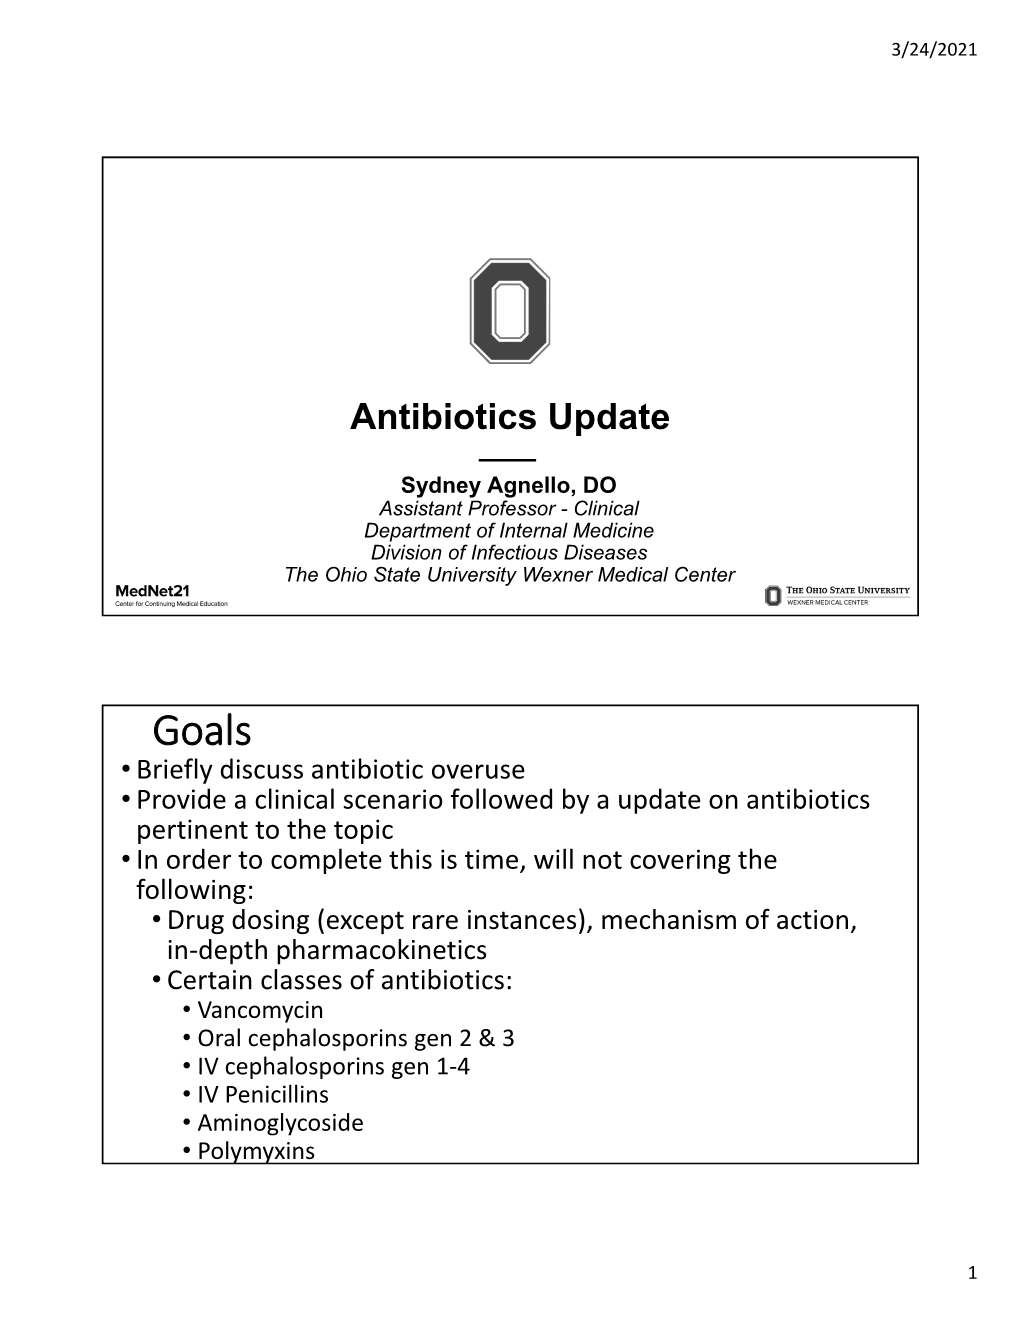 Antibiotics Update